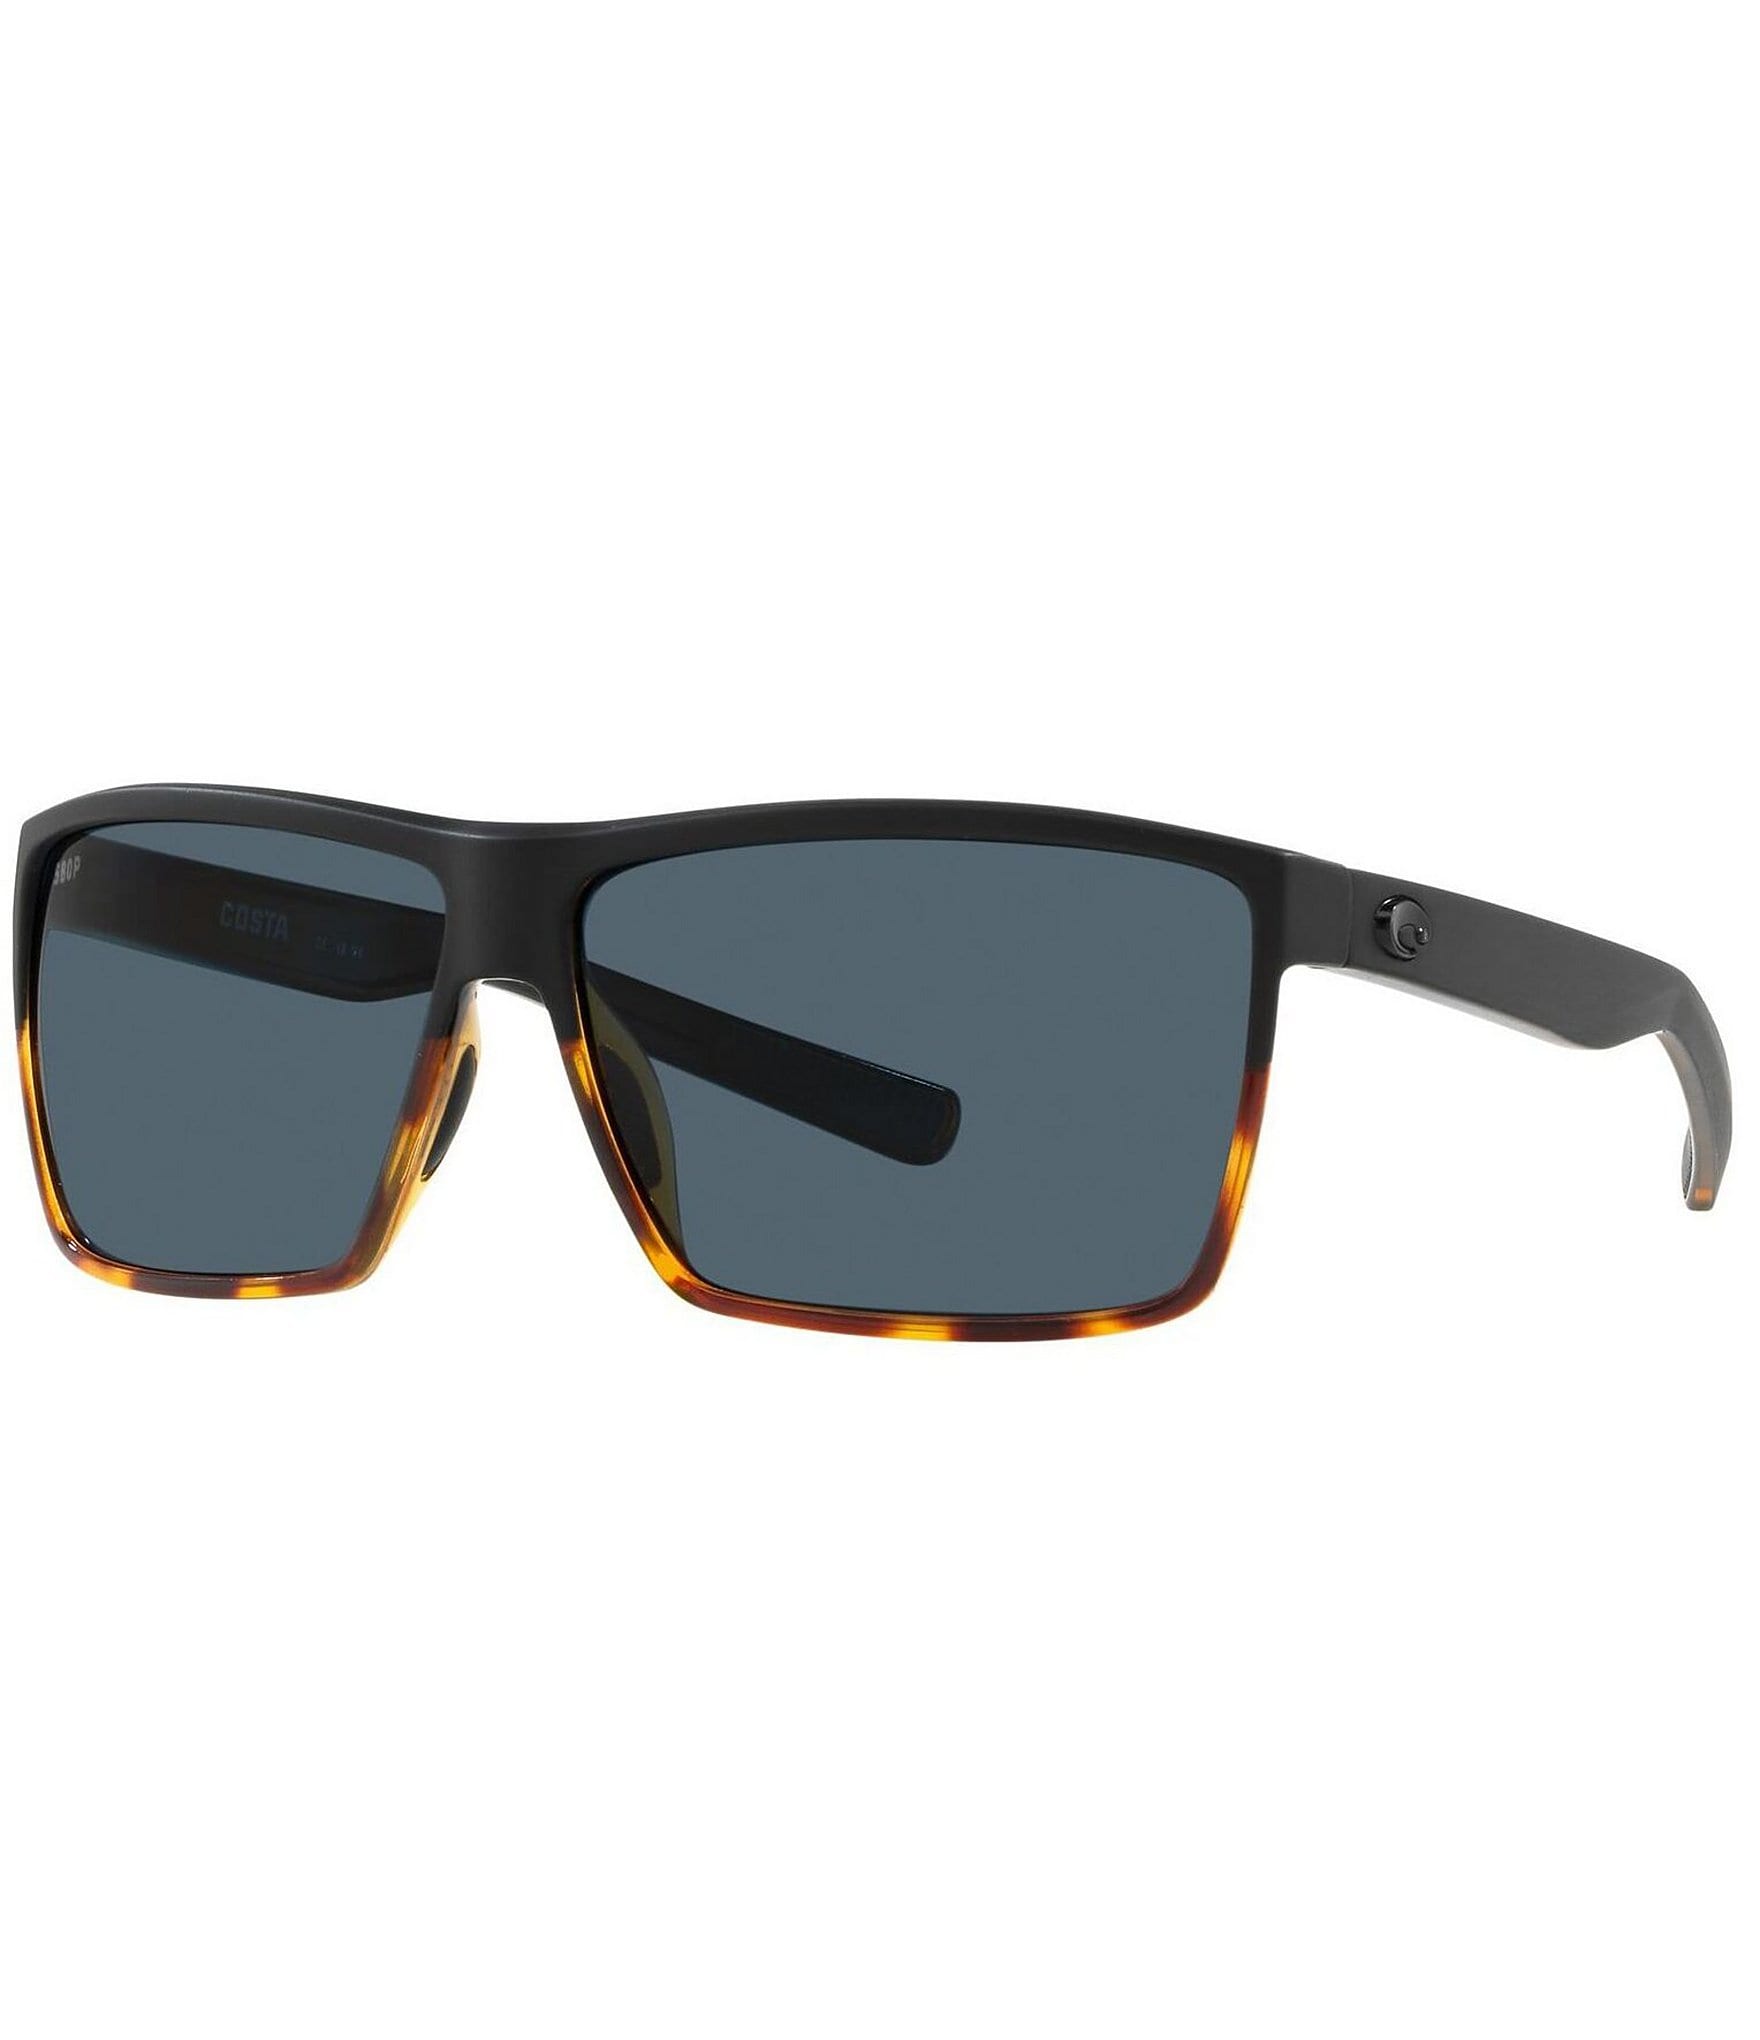 COSTA DEL MAR Rincon POLARIZED Sunglasses Black/Gray 580G NEW | eBay